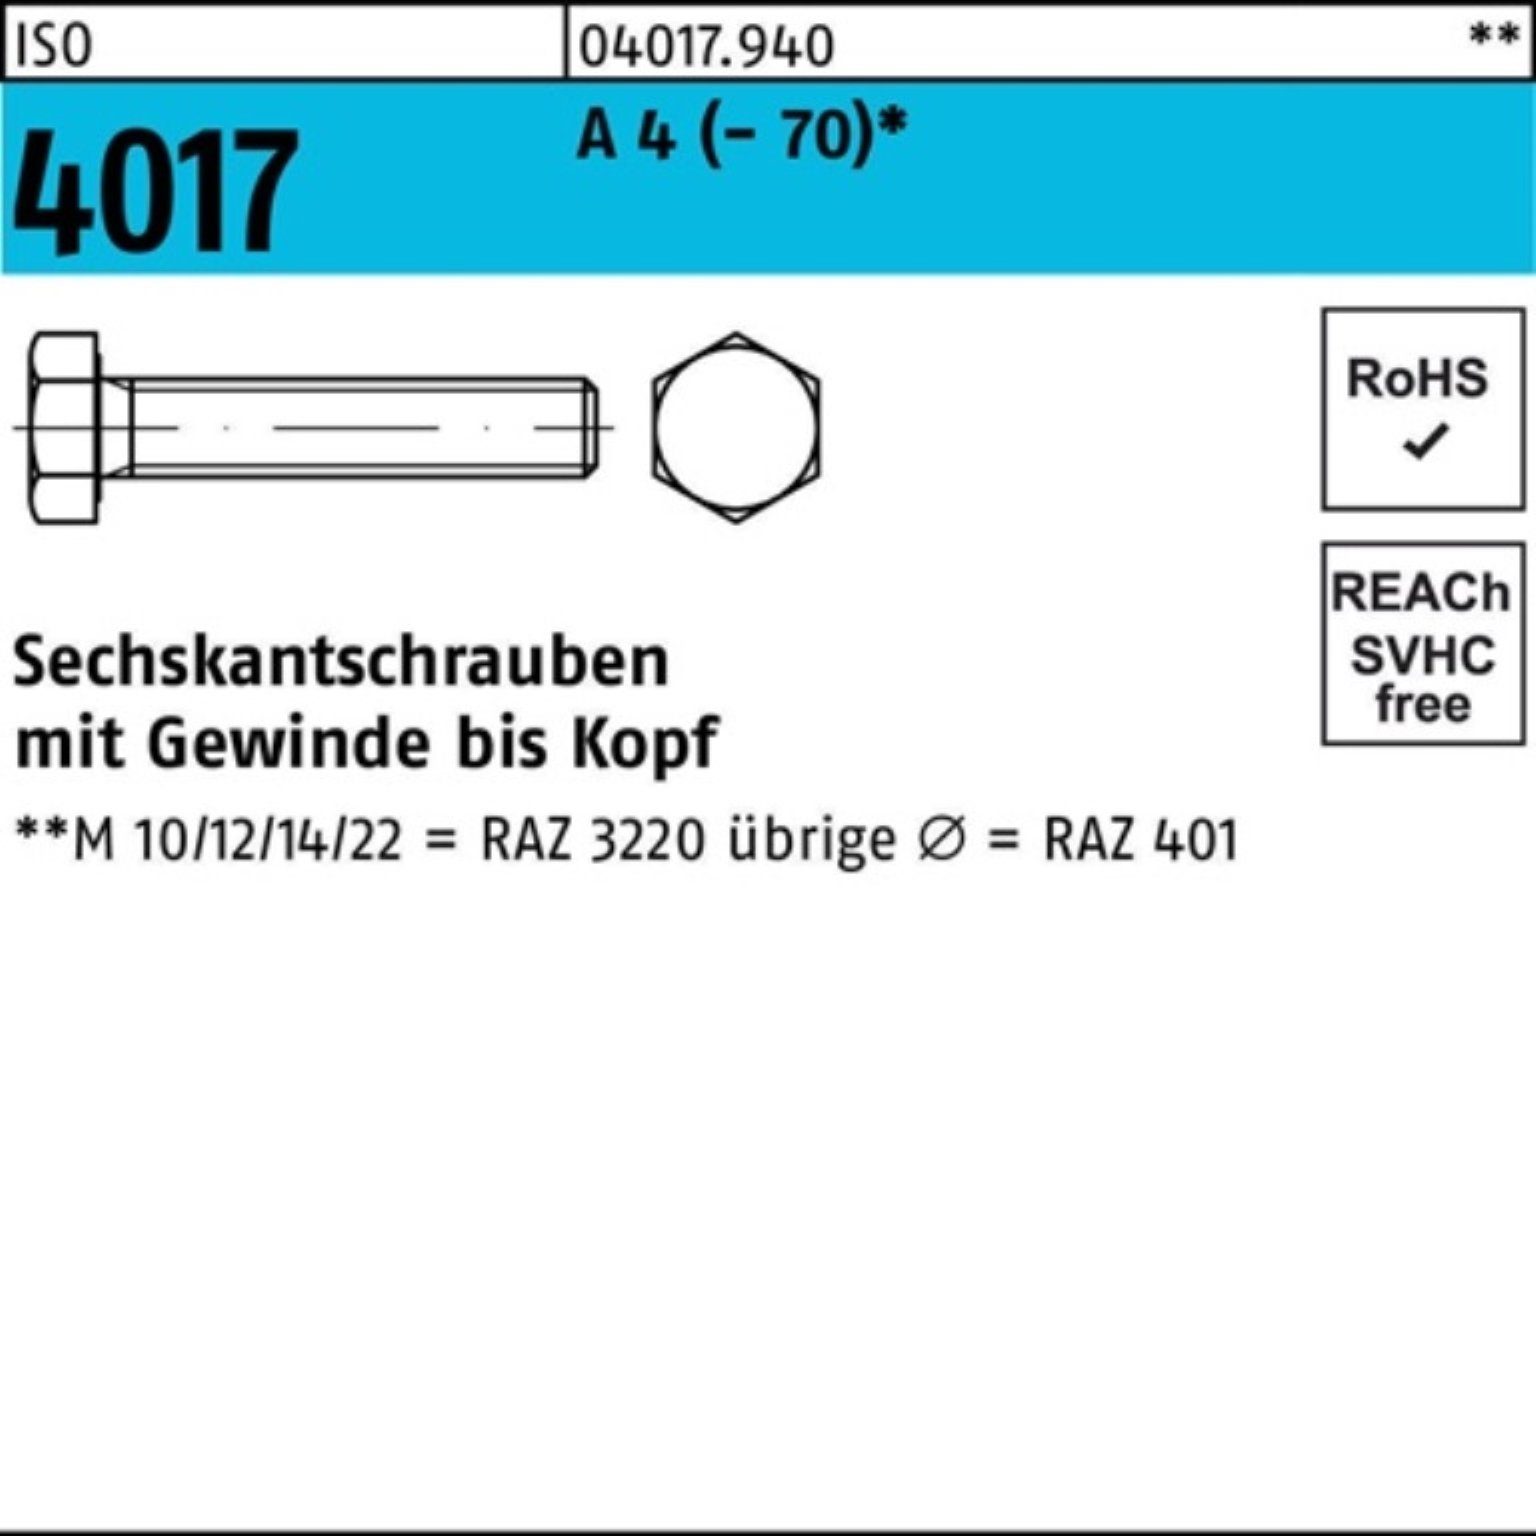 Bufab Sechskantschraube 100er Pack Sechskantschraube ISO 4017 VG M5x 12 A 4 (70) 100 Stück